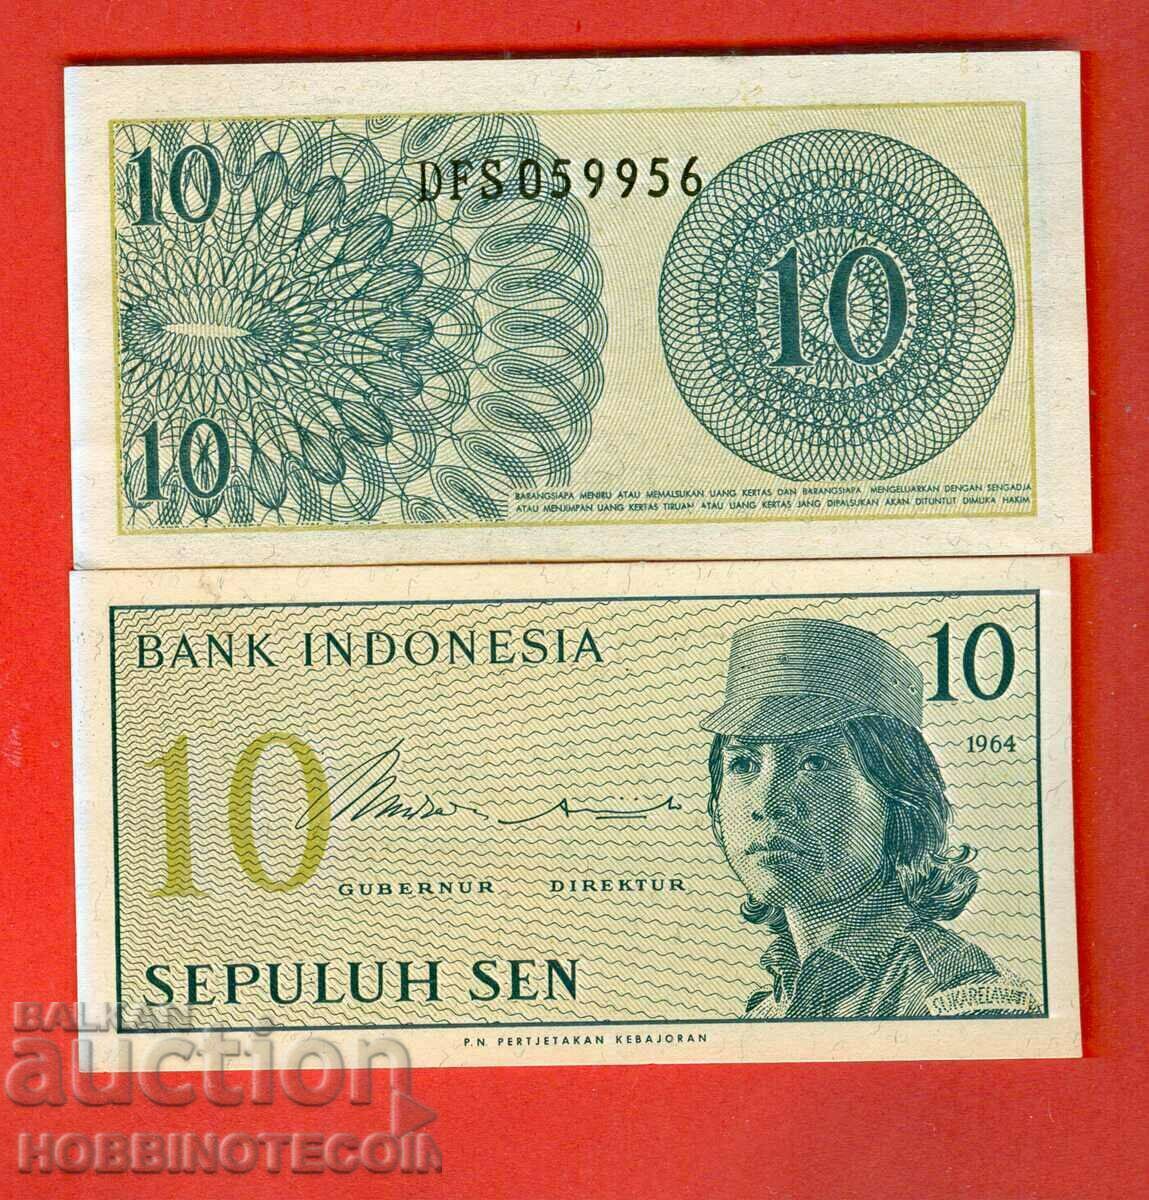 INDONEZIA INDONEZIA 10 număr 1964 NOU UNC